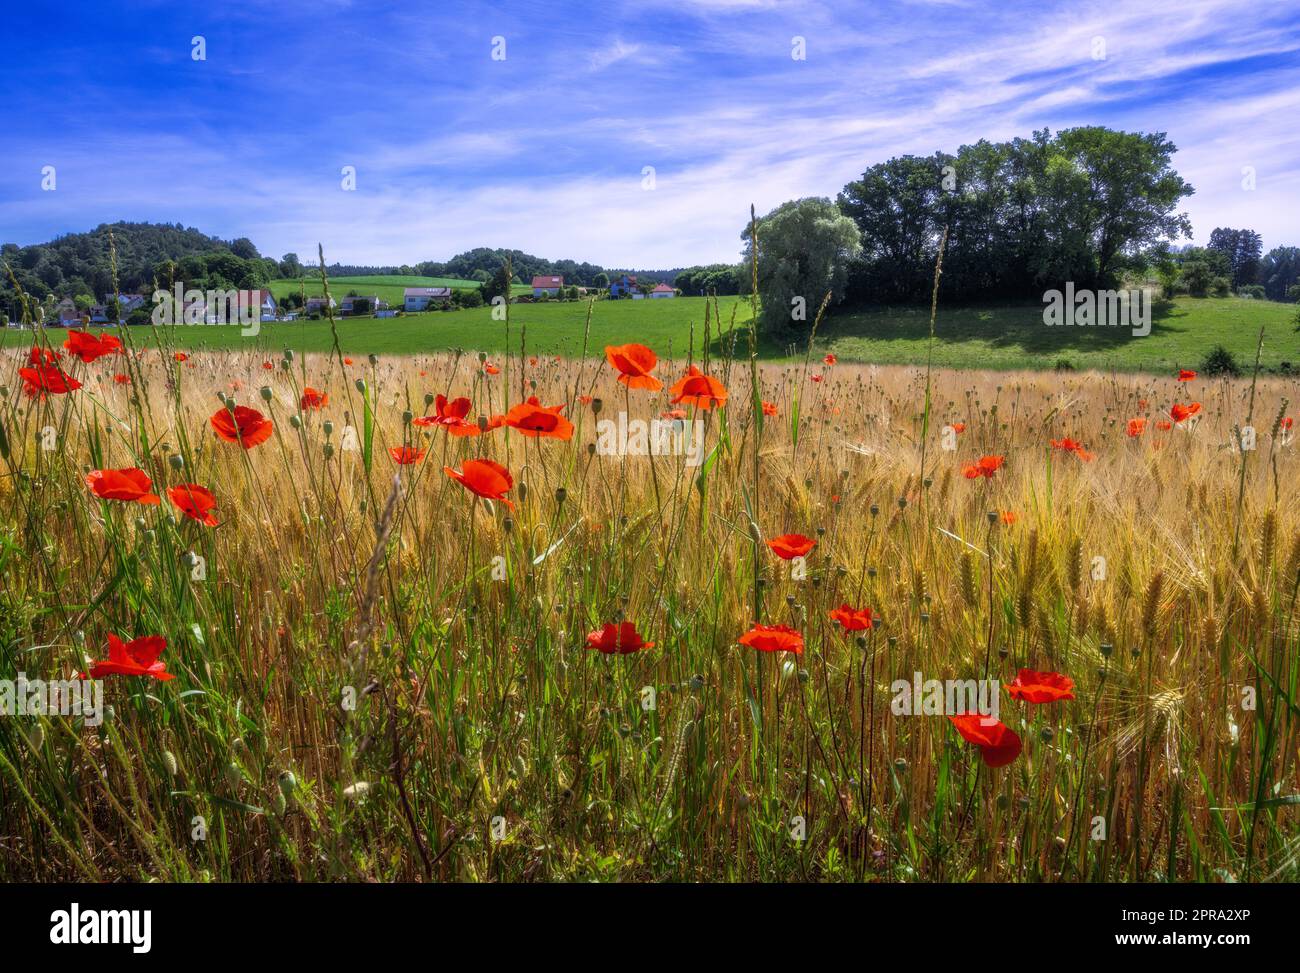 Ländliche Landschaft mit Maisfeld und rotem Mohn Stockfoto